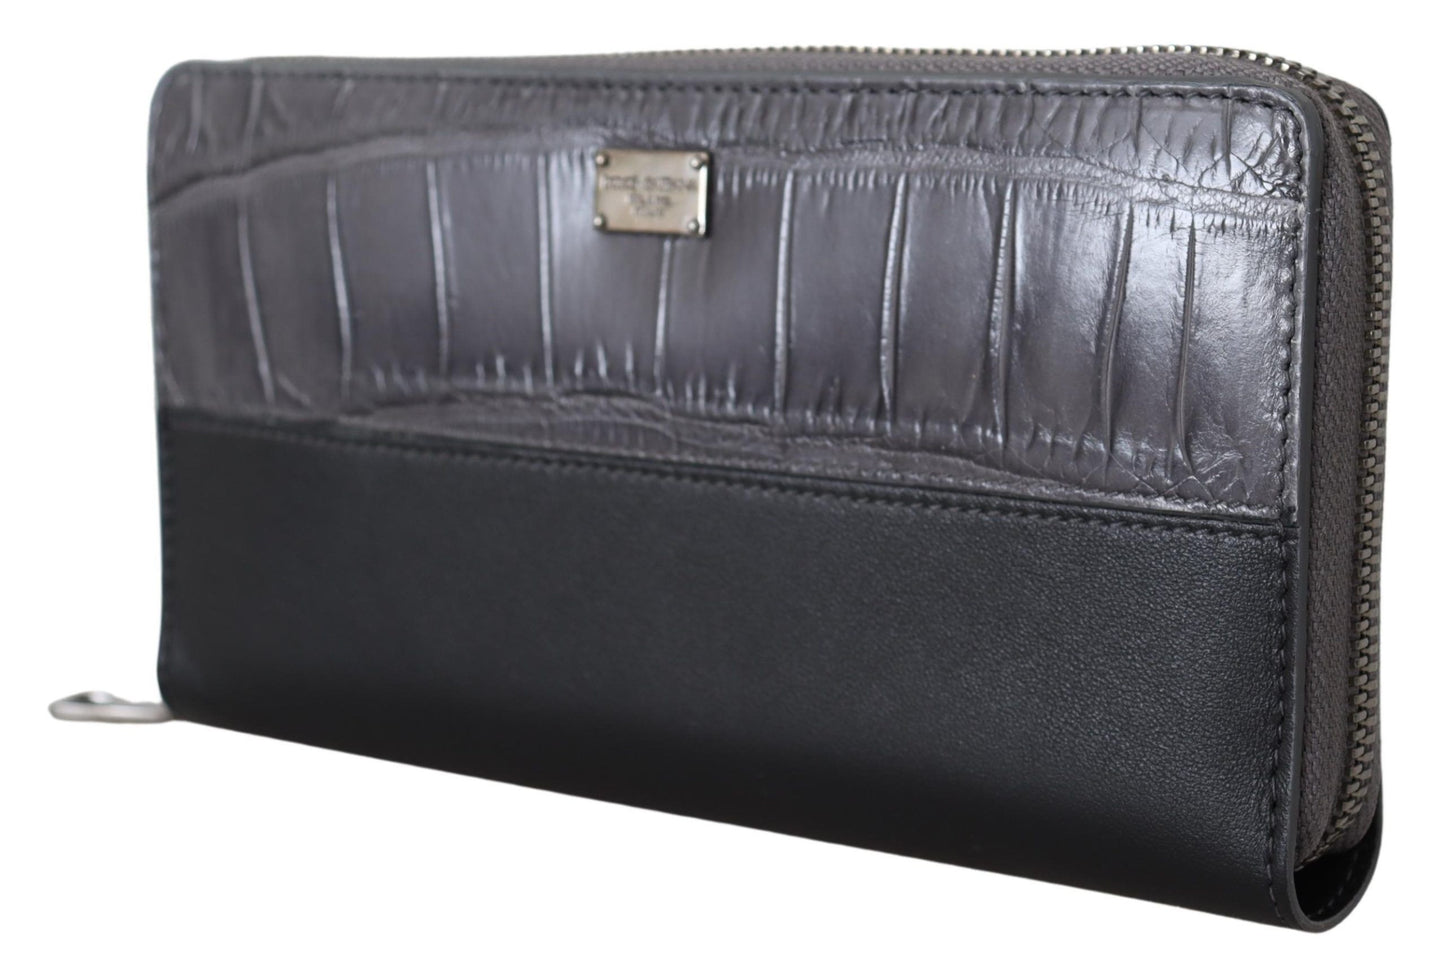 Dolce & Gabbana Black Zip attorno al portafoglio in pelle della frizione continentale